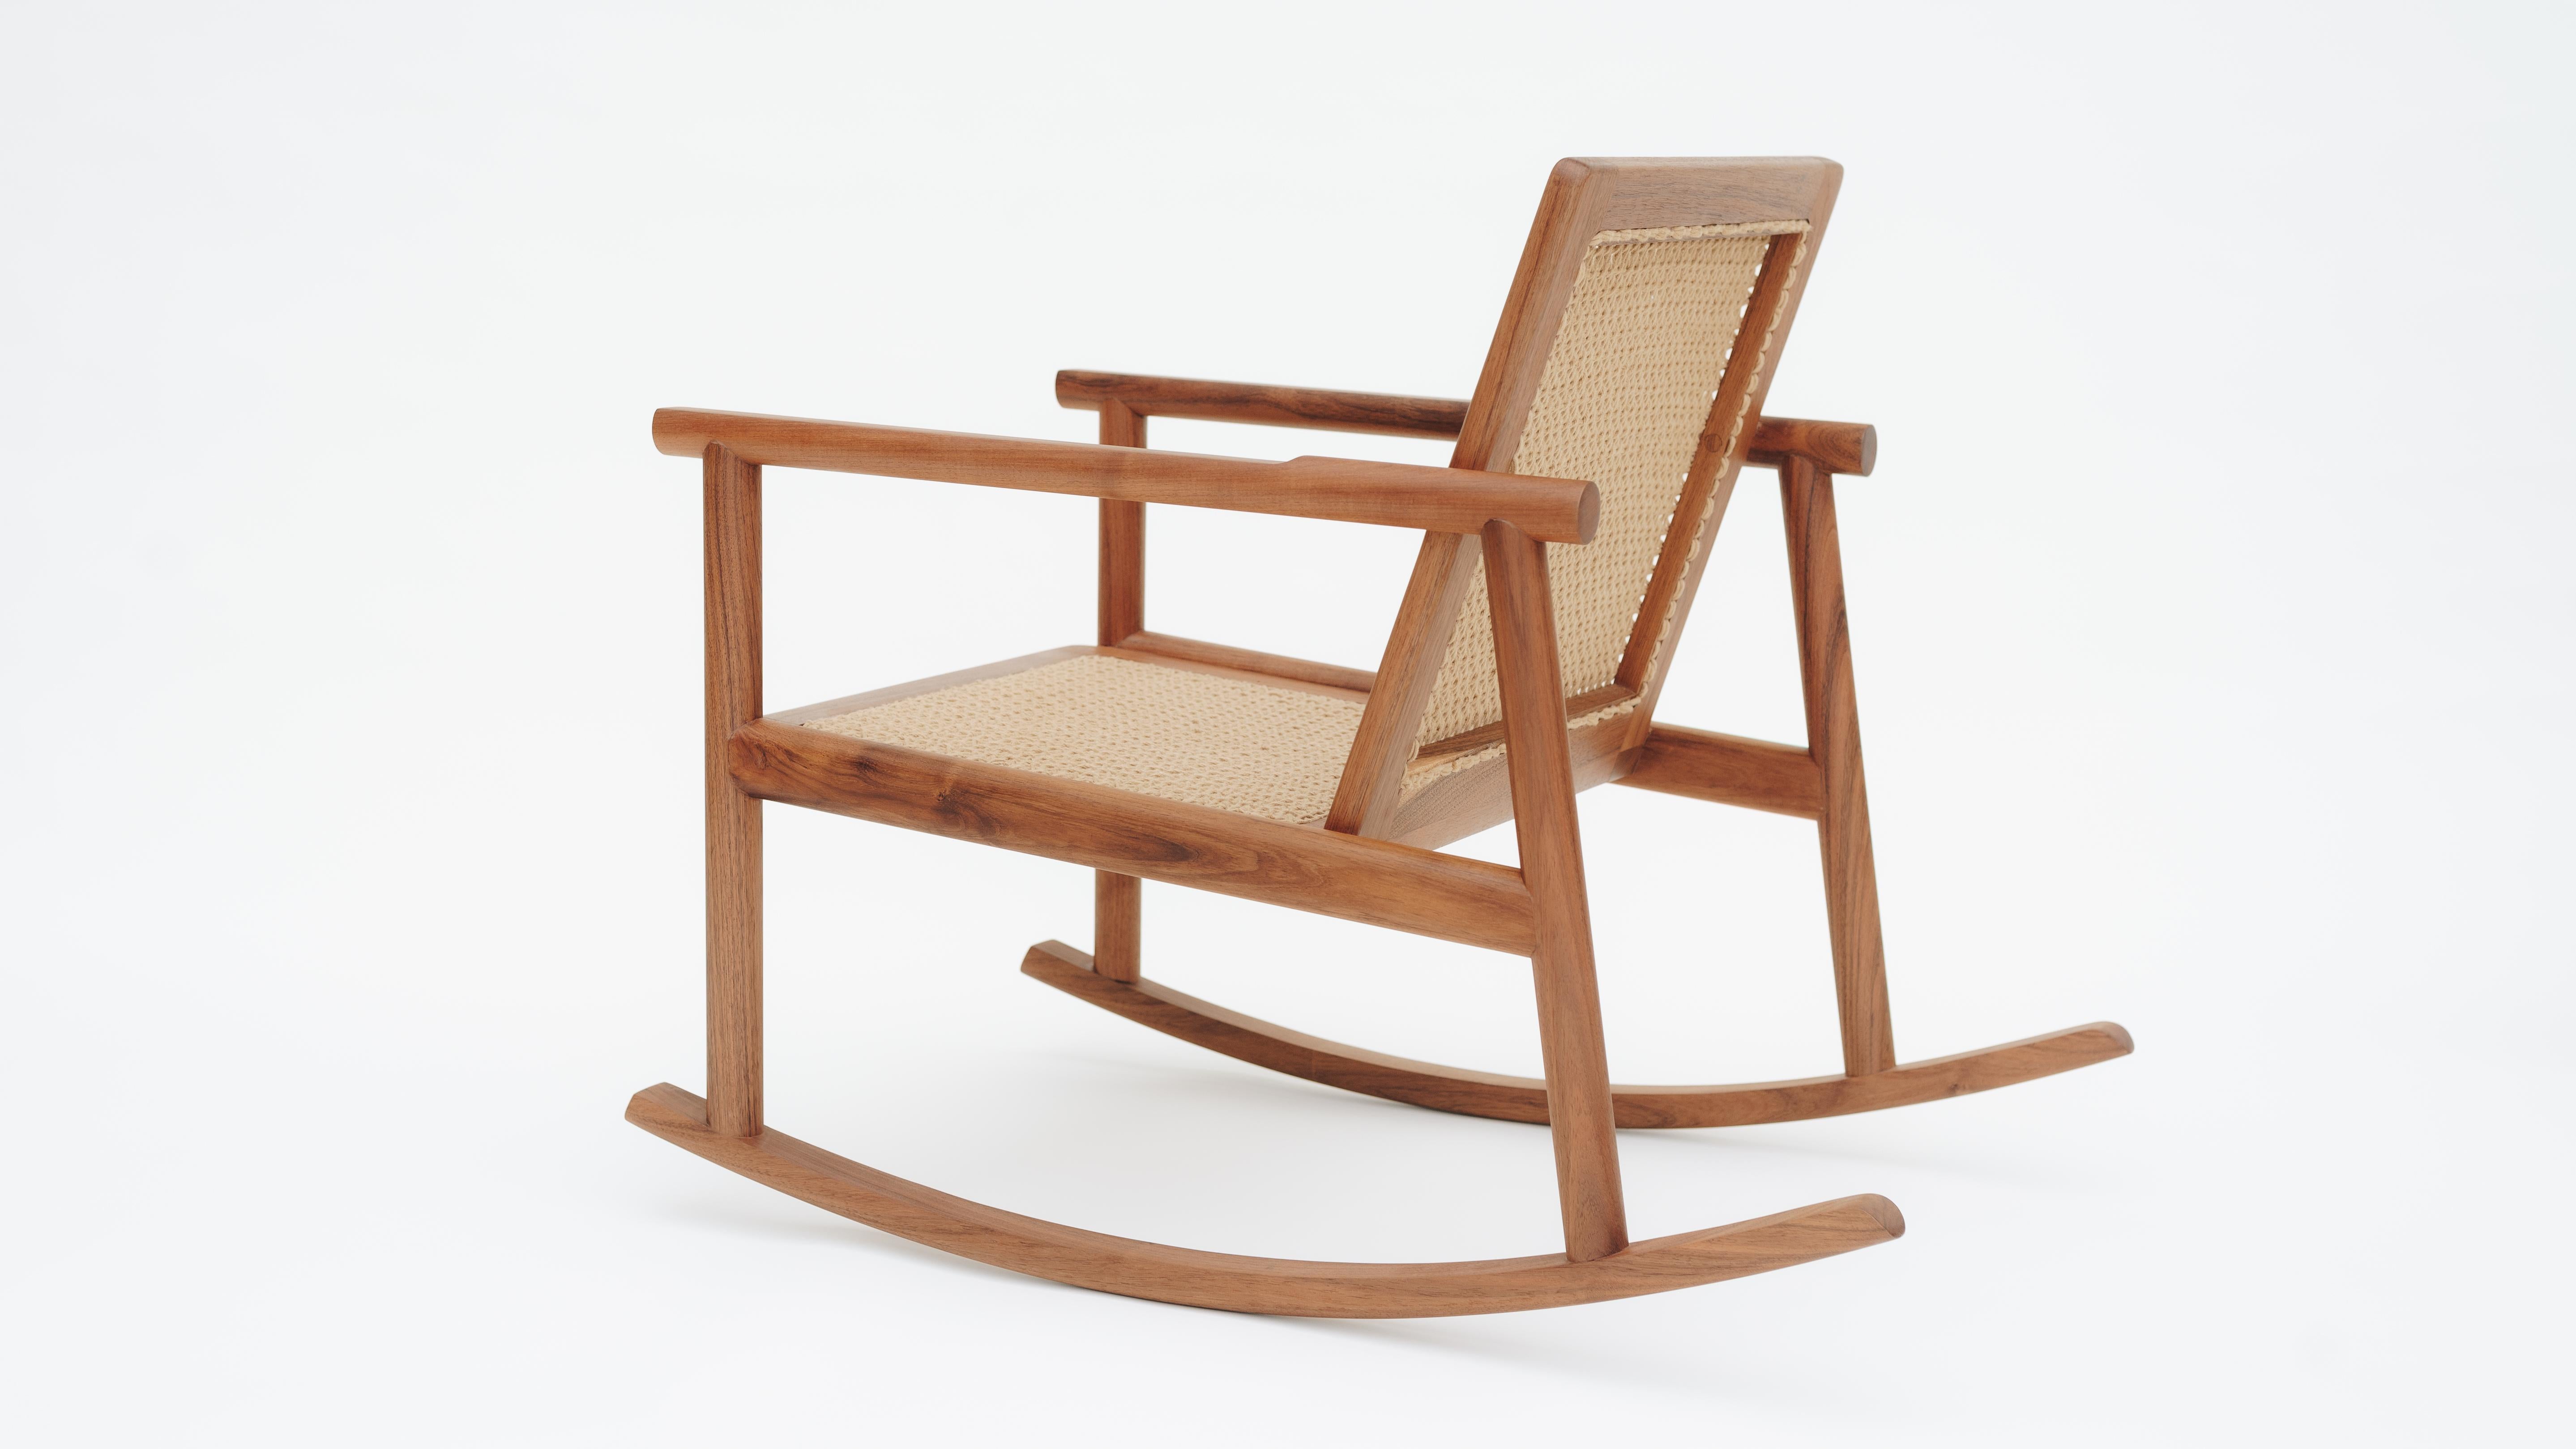 Das Design des Schaukelstuhls Cocom ist von den traditionell in Yucatan geflochtenen Korbwippen und Sesseln inspiriert. Heutzutage ist diese Tradition am Aussterben, ebenso wie die Kunst, Stühle von Hand zu weben. Deshalb soll das Design der